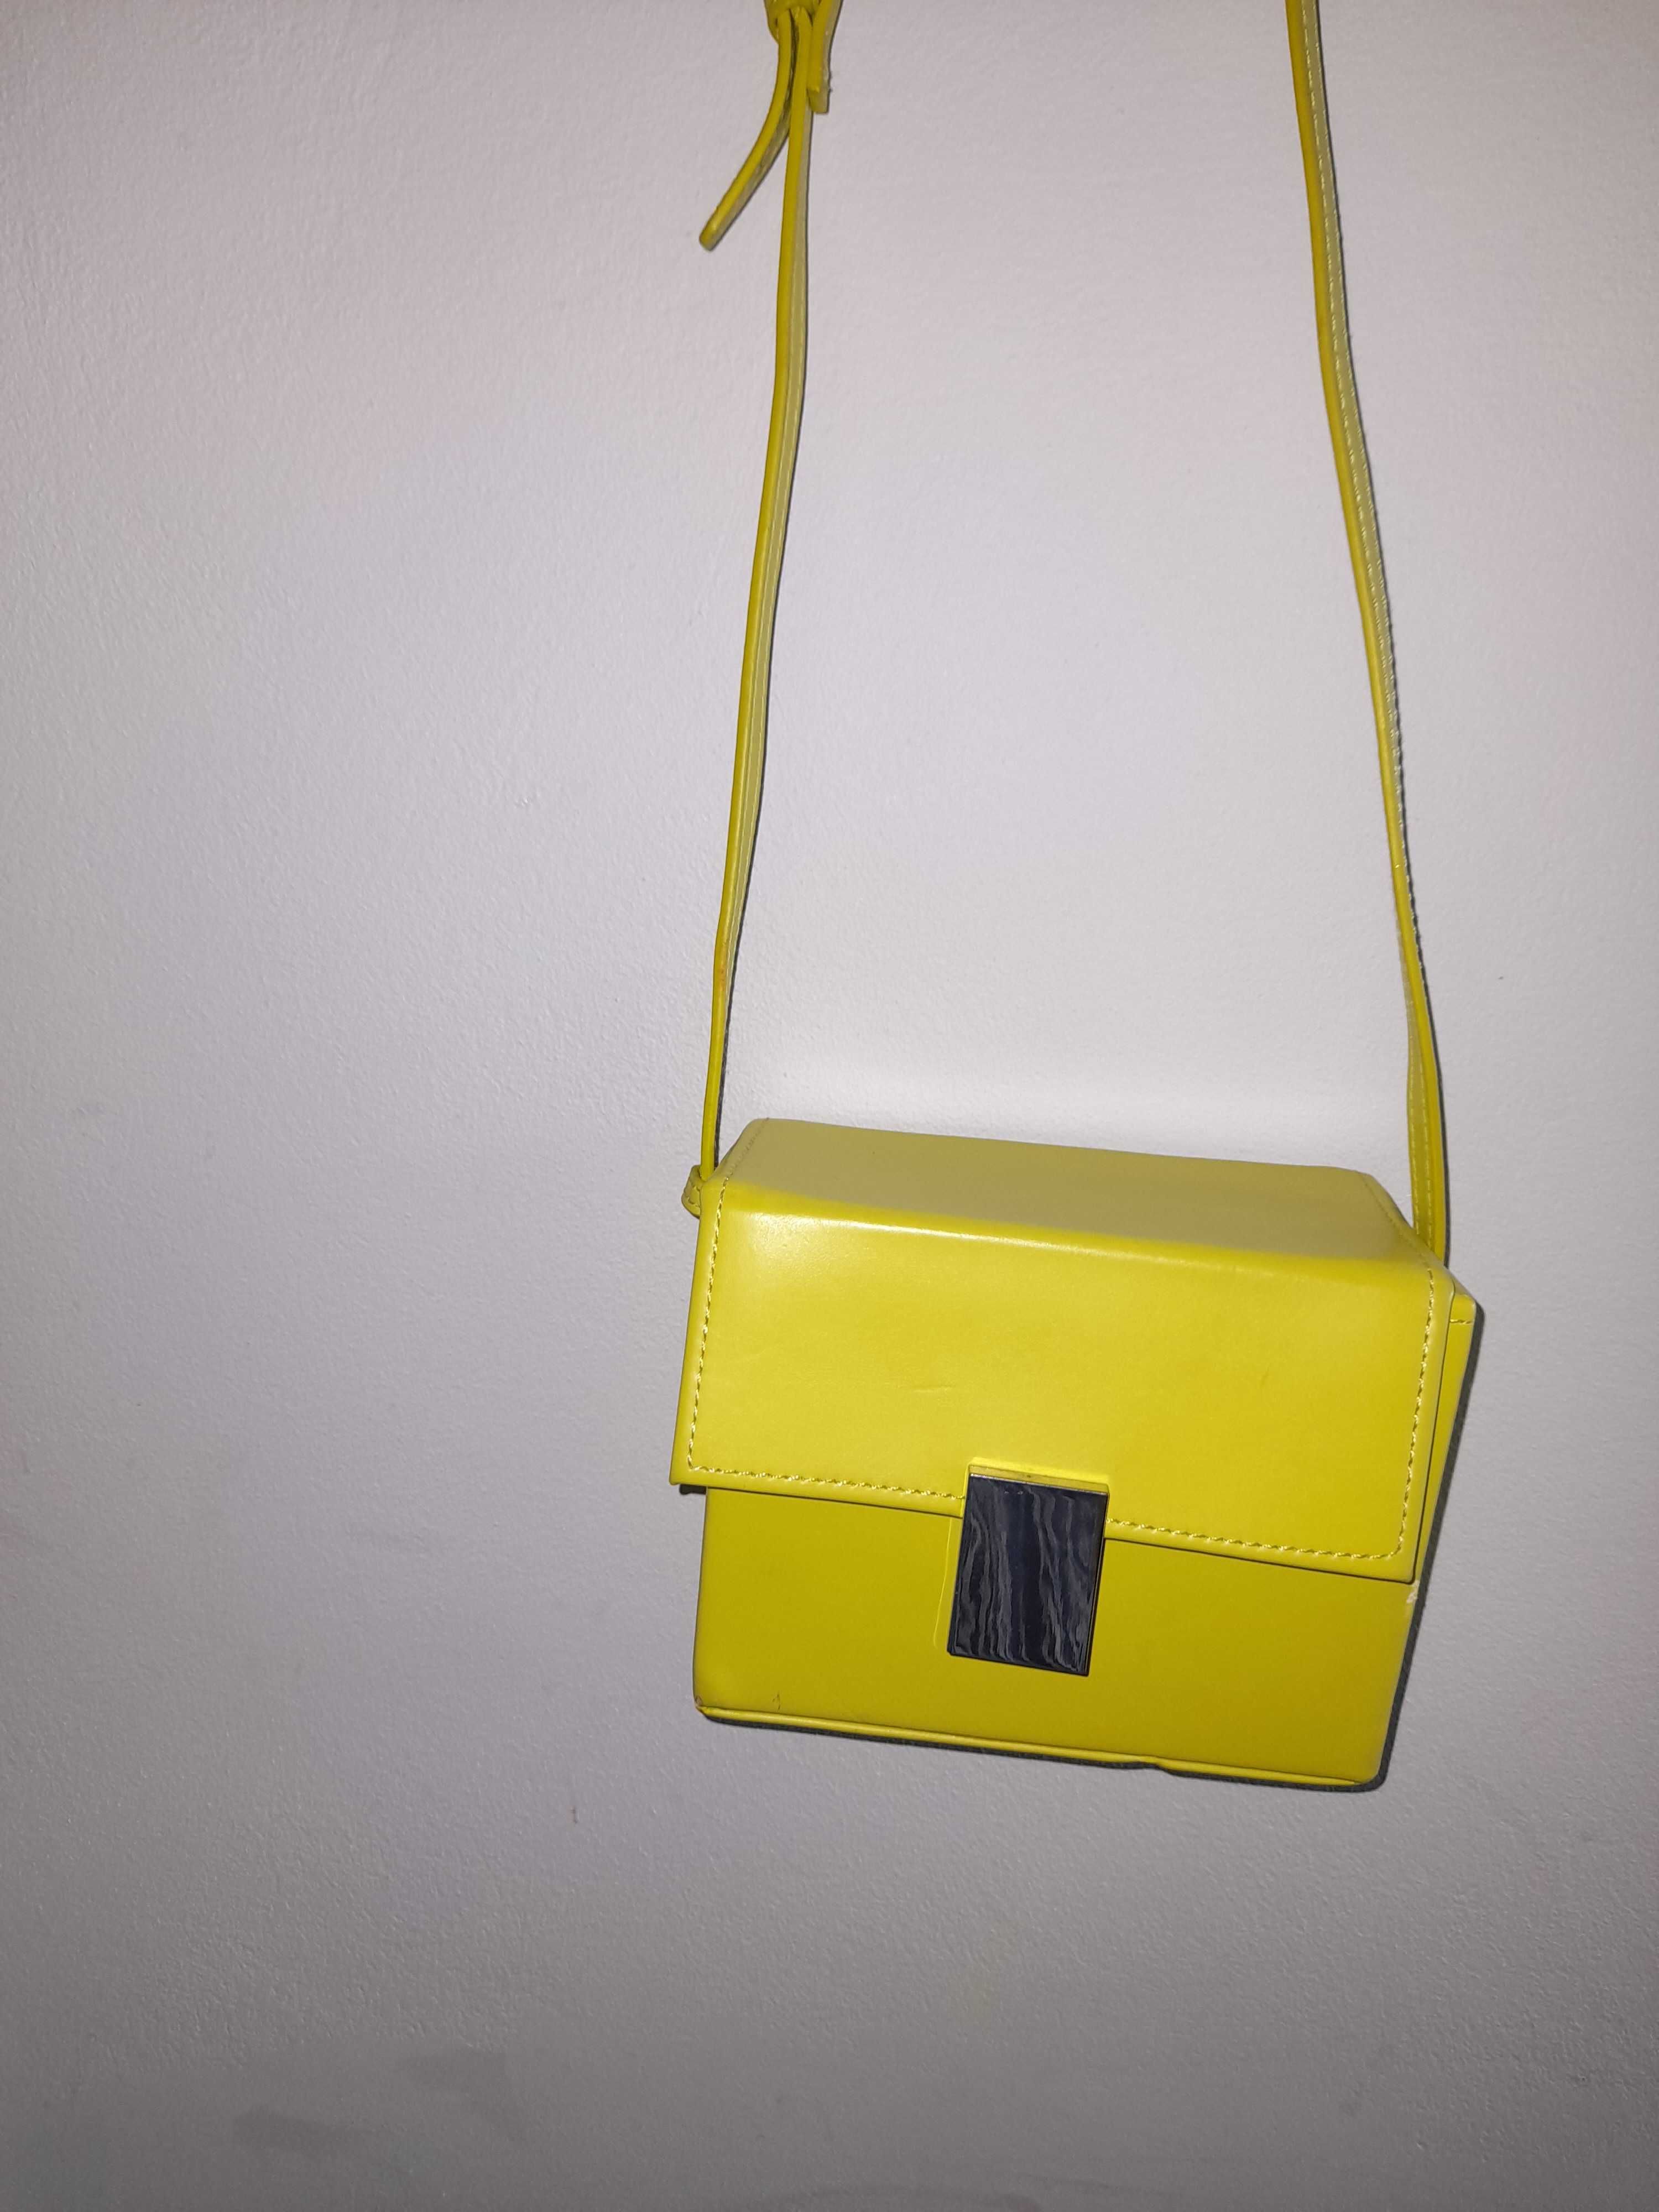 Zara torebka żółta kuferek mała limonka